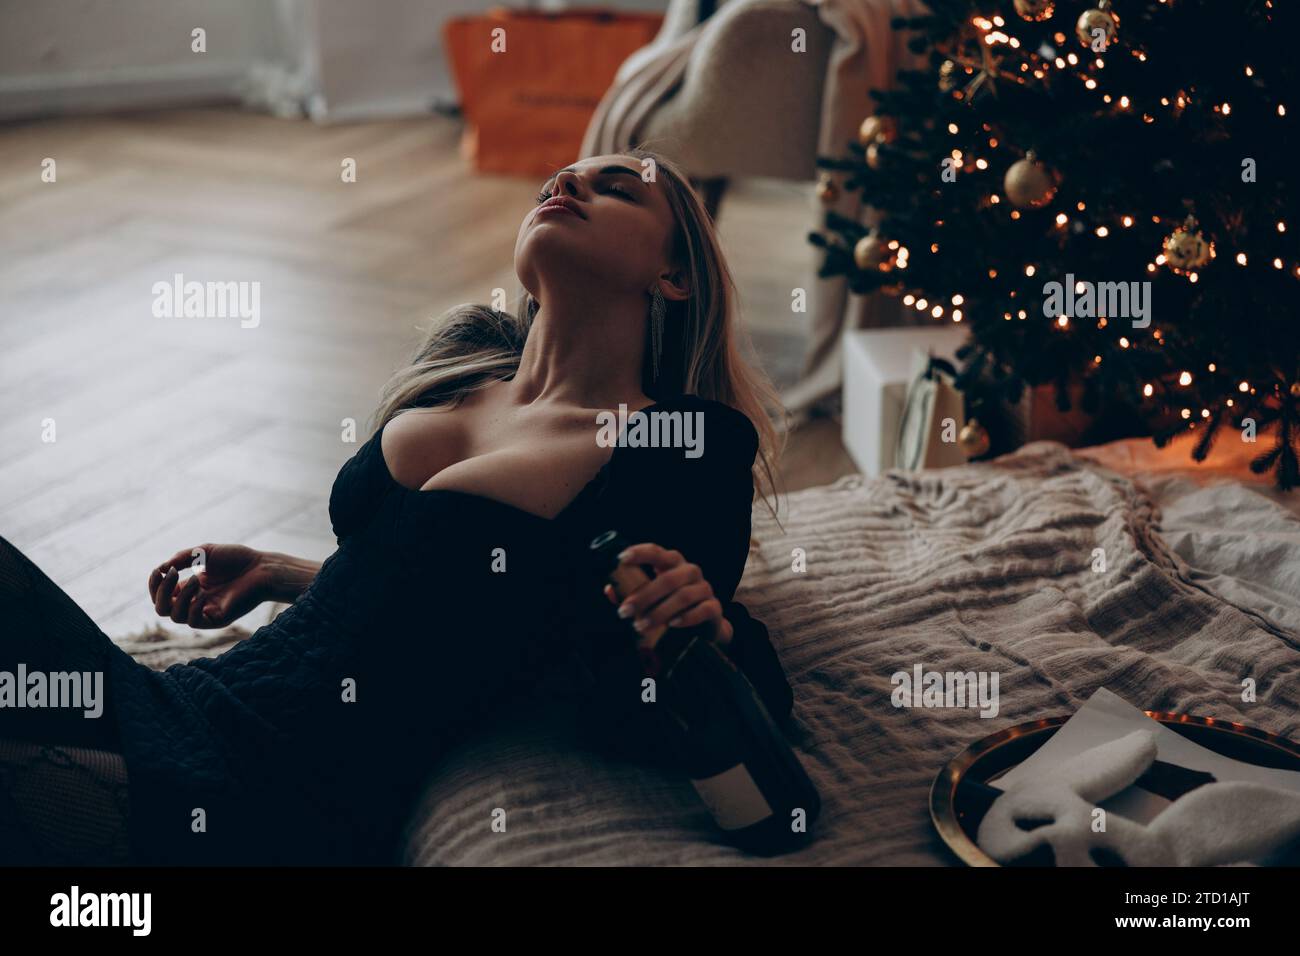 Giovane donna bionda seduta vicino al letto e rilassante in un elegante vestito nero mini decollete con una bottiglia di vino in mano contro l'albero di Natale. Primo piano. Foto Stock